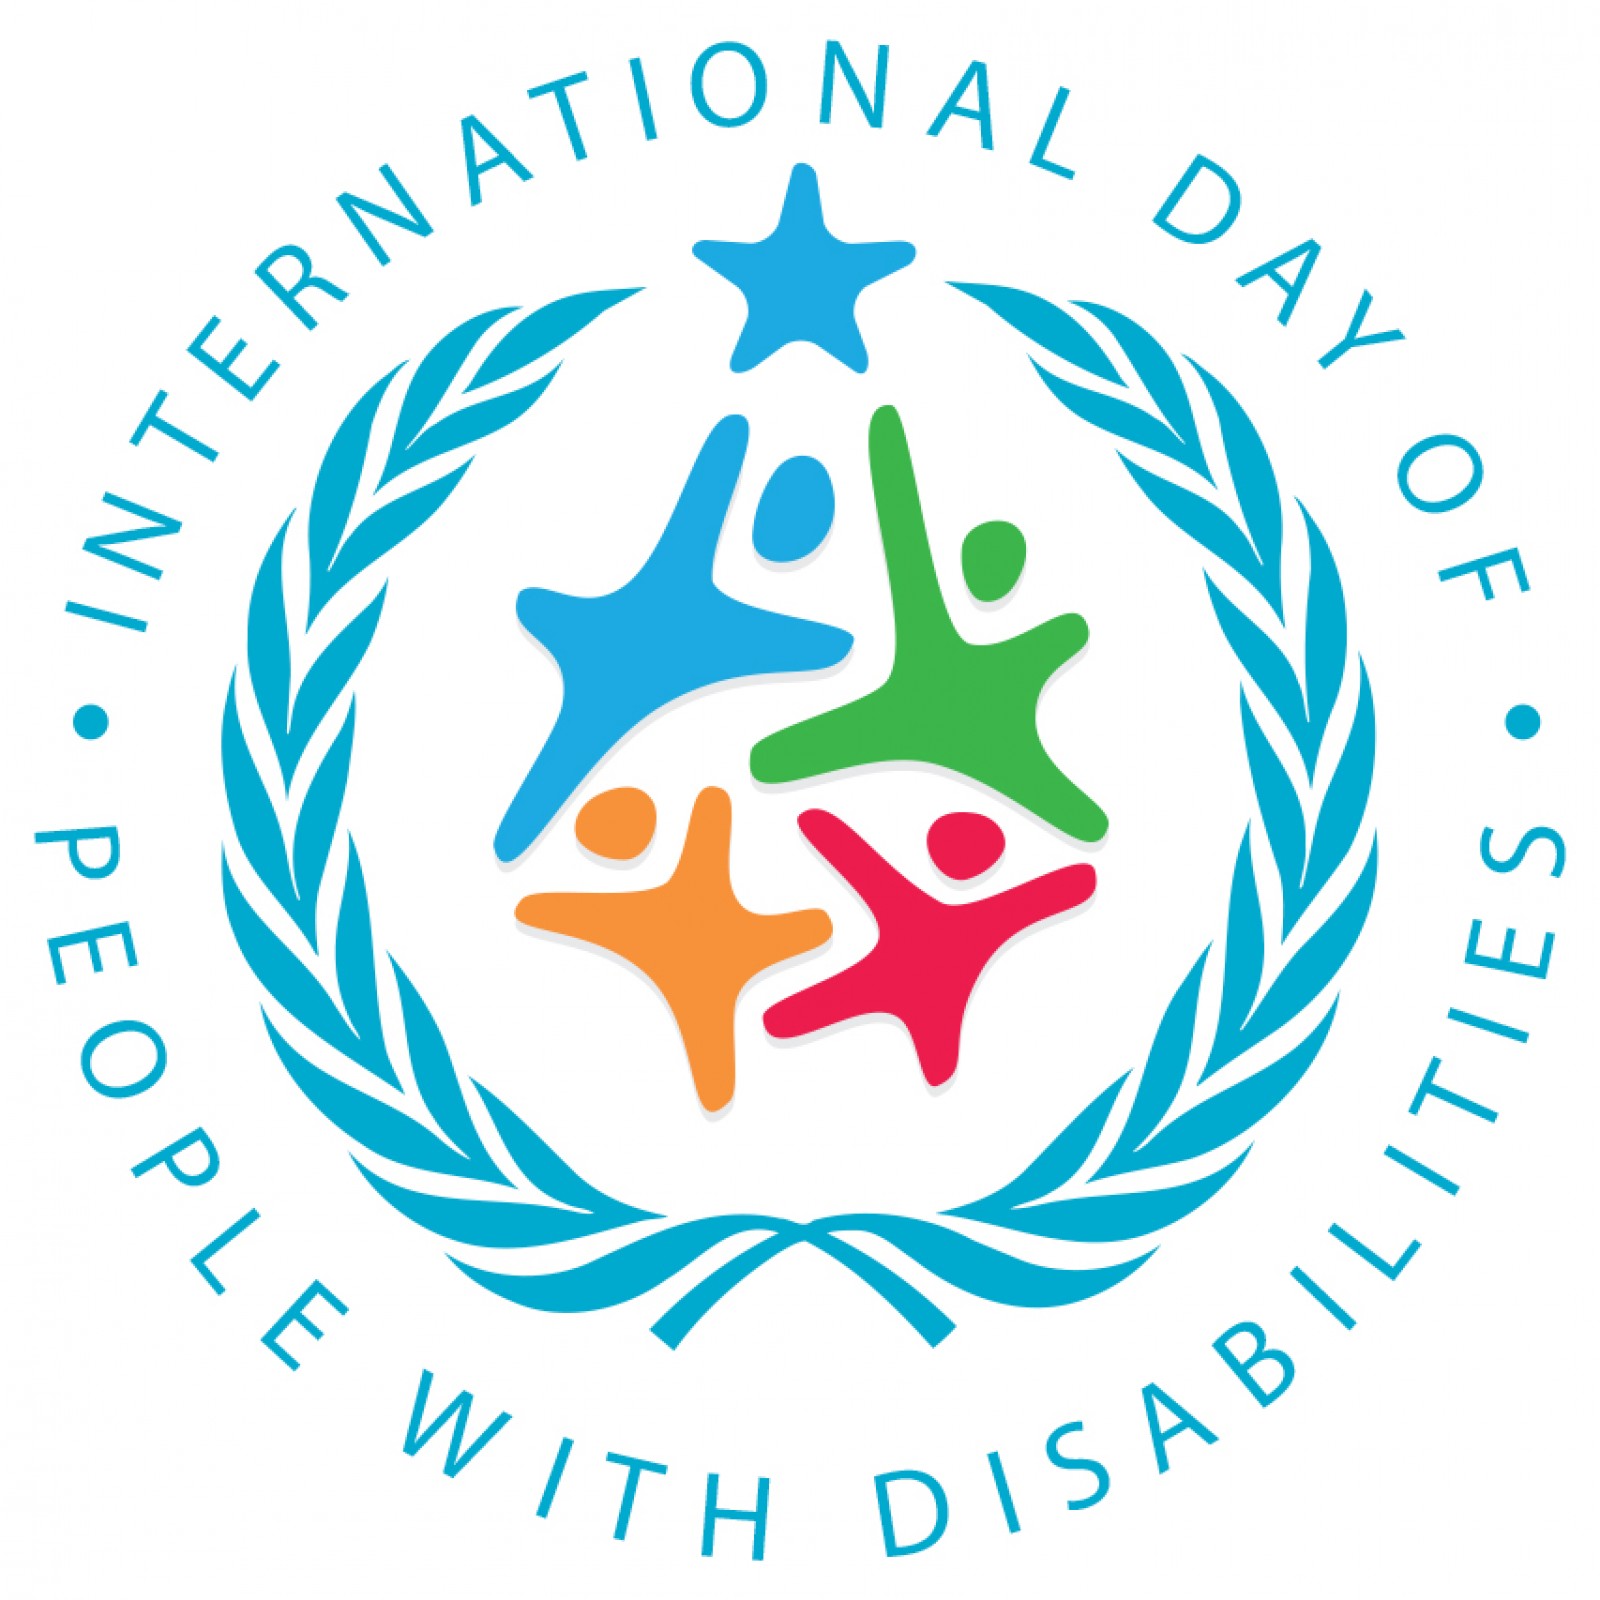 شعار اليوم العالمي للإعاقة 2021